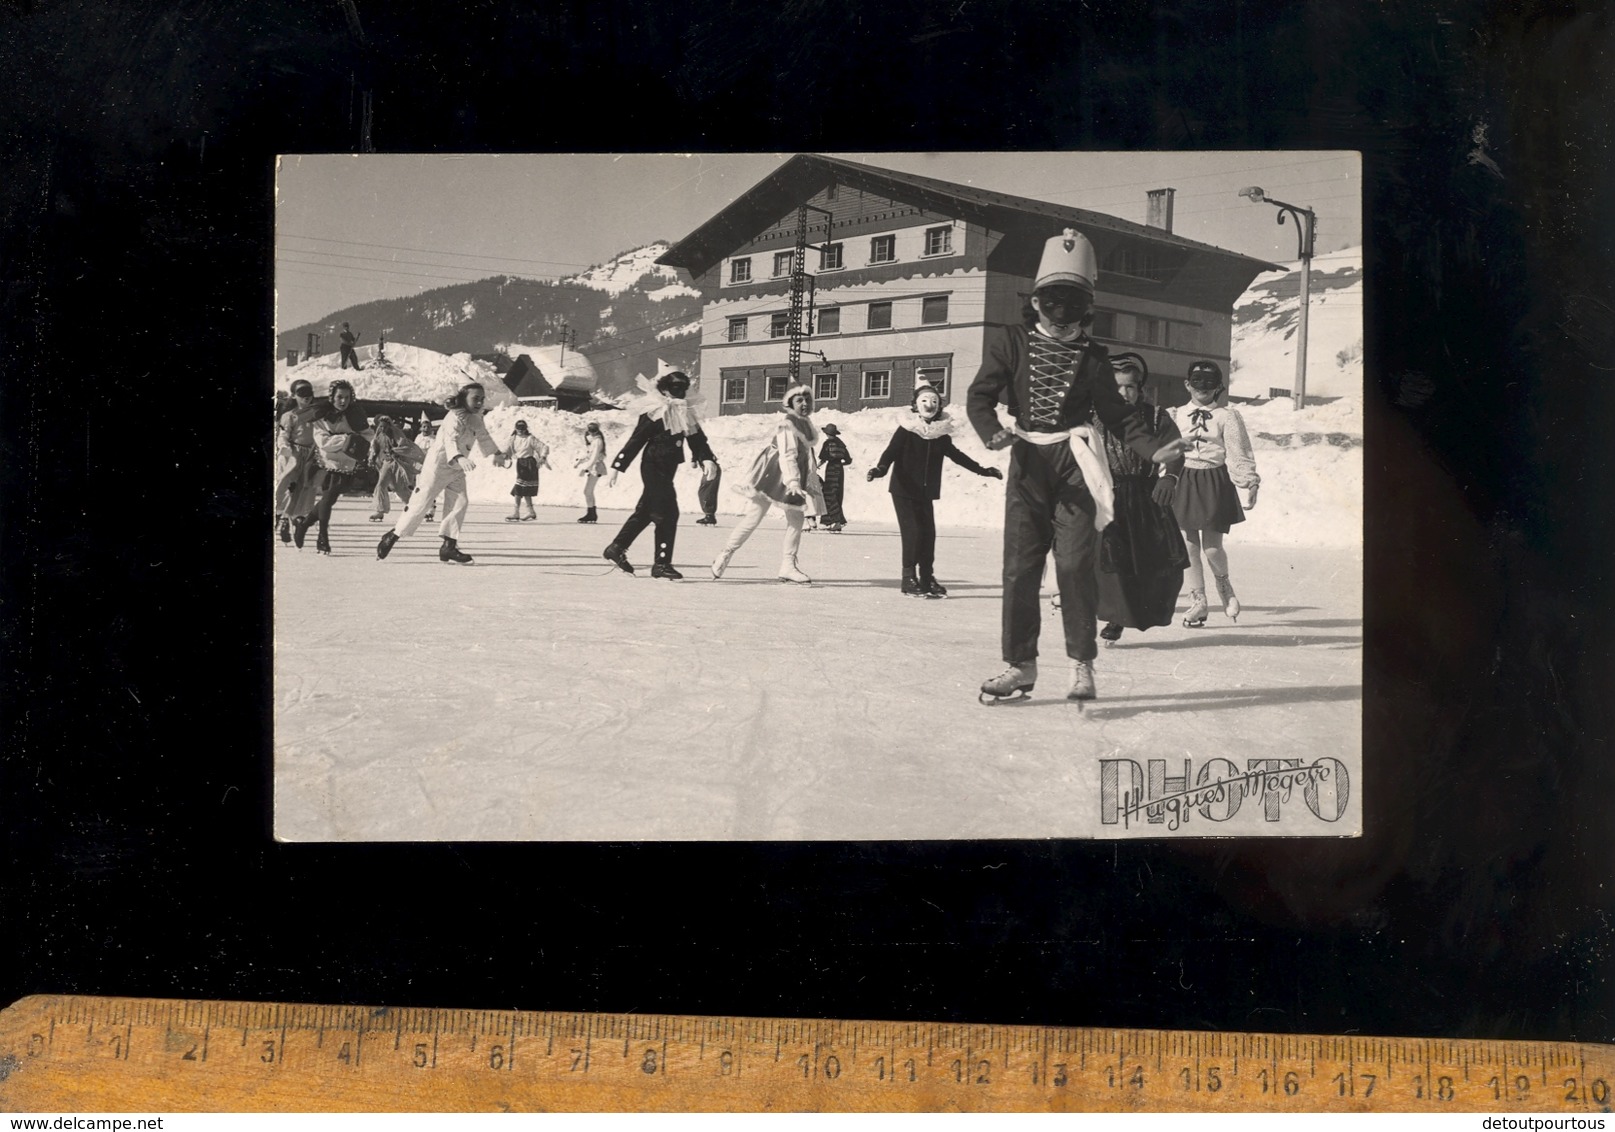 X6 Cartes Photo MEGEVE Haute Savoie 74 : Enfants Déguisés En Patin à Glace Sur La Patinoire Patineurs Ice Skating - Megève